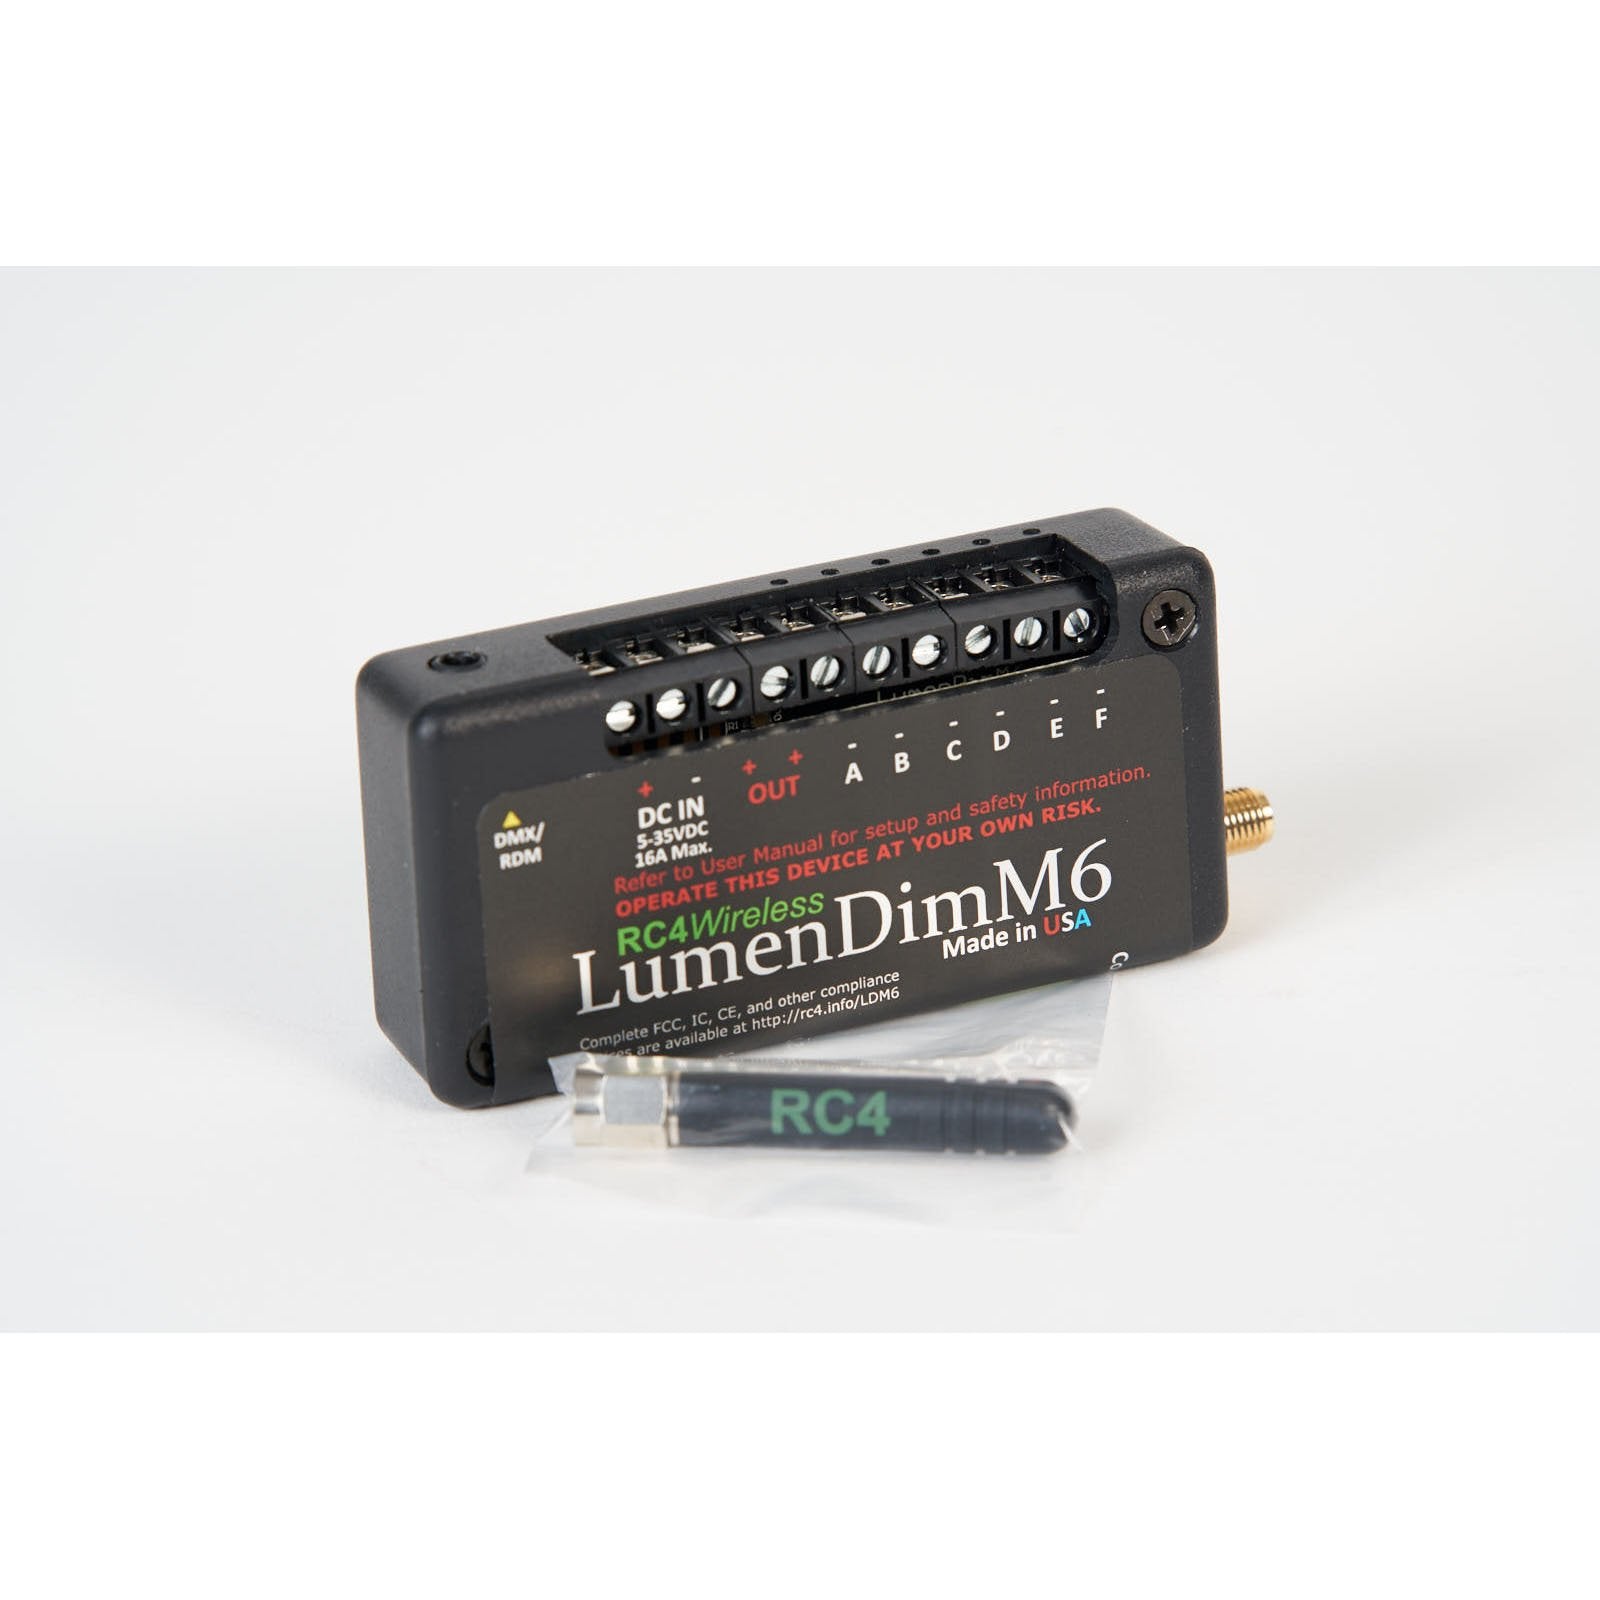 LumenDimM6 - Miniature 6 Channel CRMX Wireless Dimmer